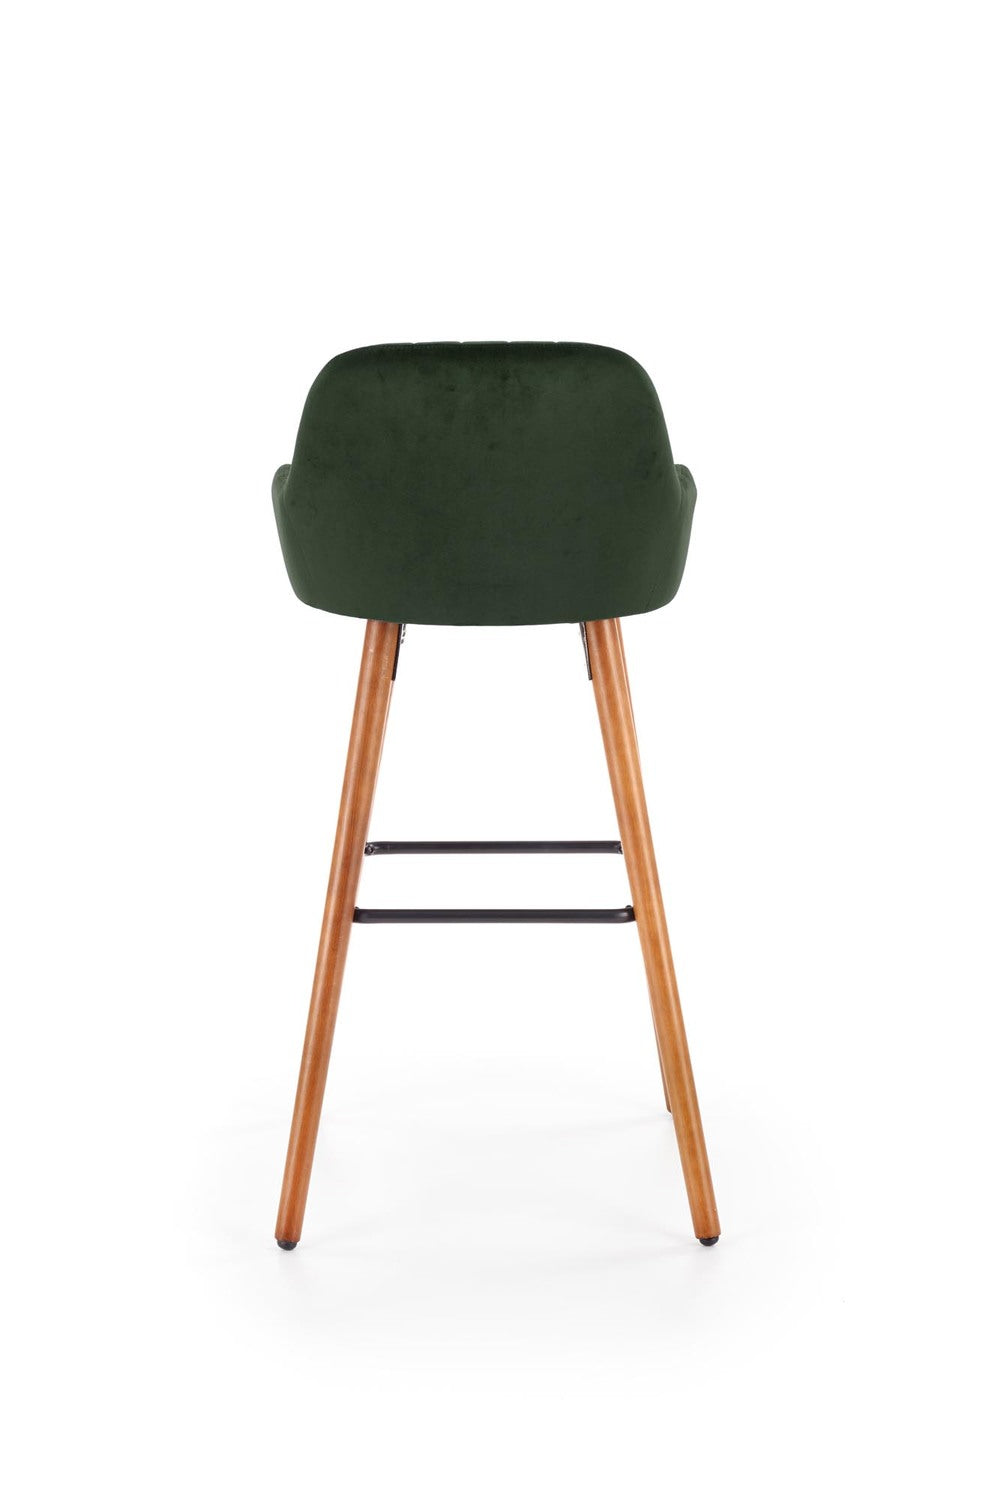 LN krēsls riekstkoks/tumši zaļs 47/49/98/75 cm - N1 Home